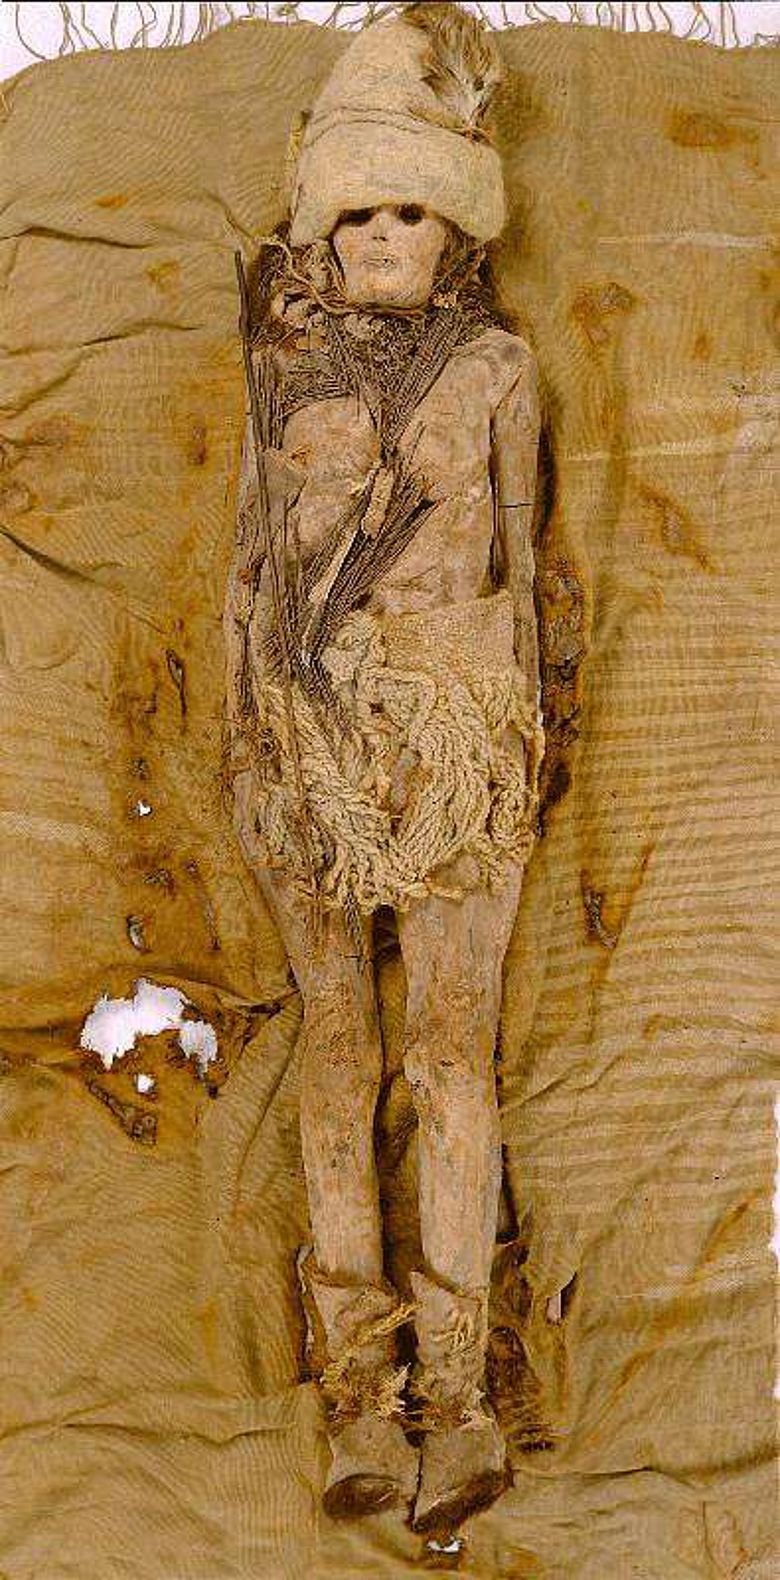 Die "Schöne von Xiaohe“ ist eine etwa 4000 Jahre alte Mumie